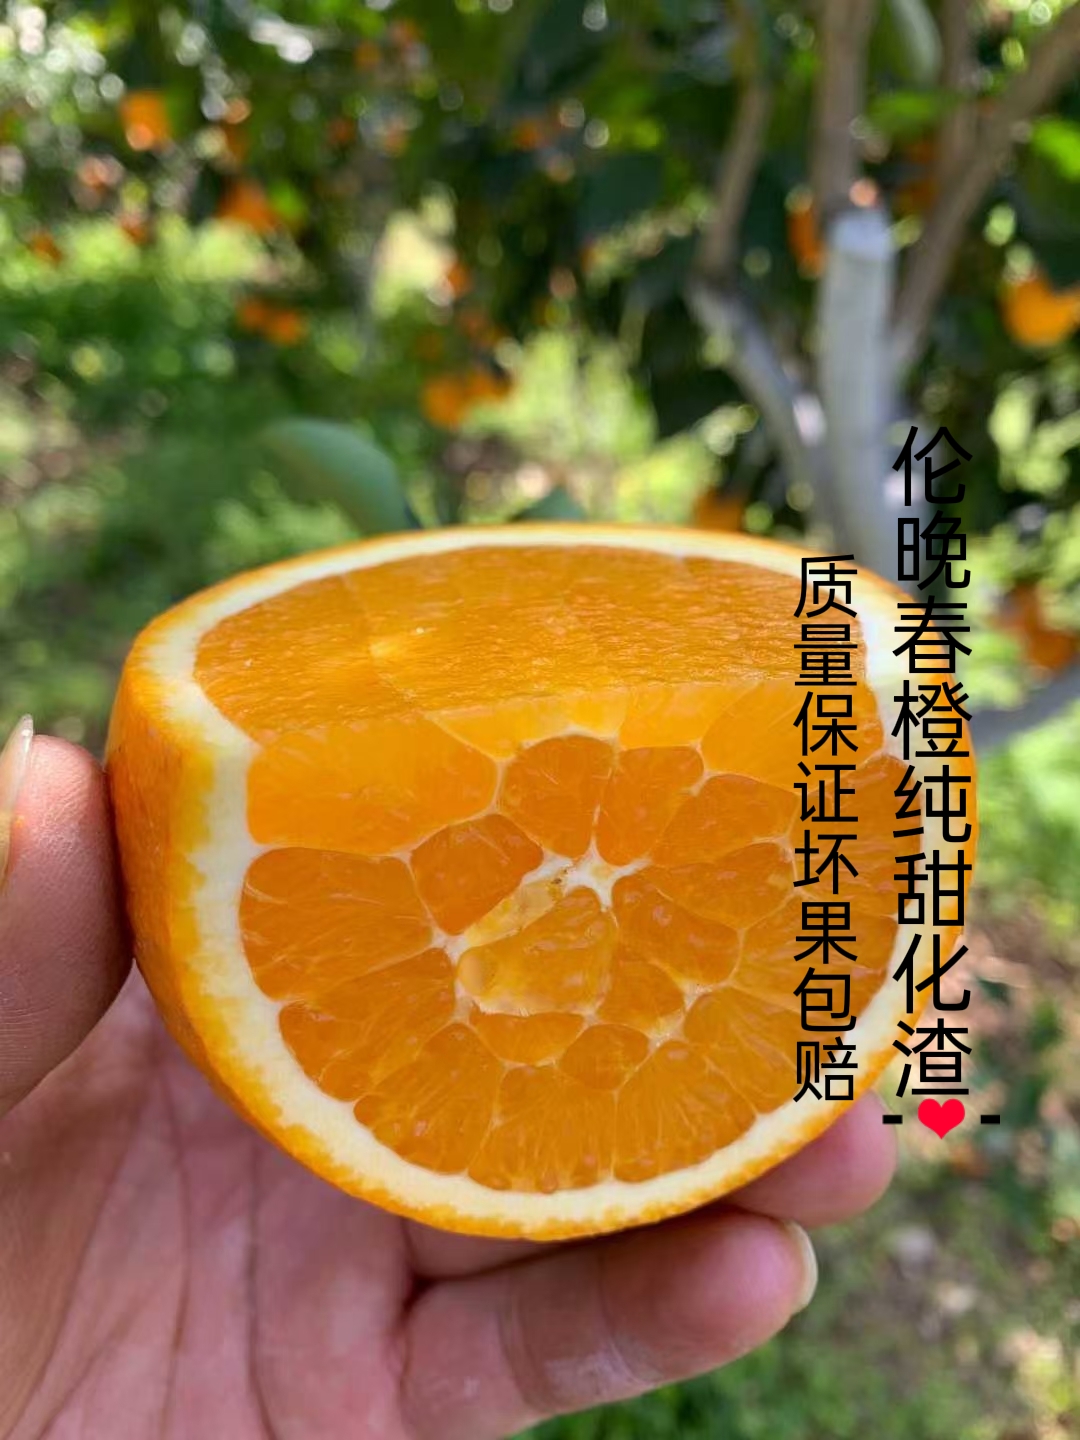 秭归县伦晚脐橙 中华红血橙 树上鲜果 纯甜化渣 产地一手货源